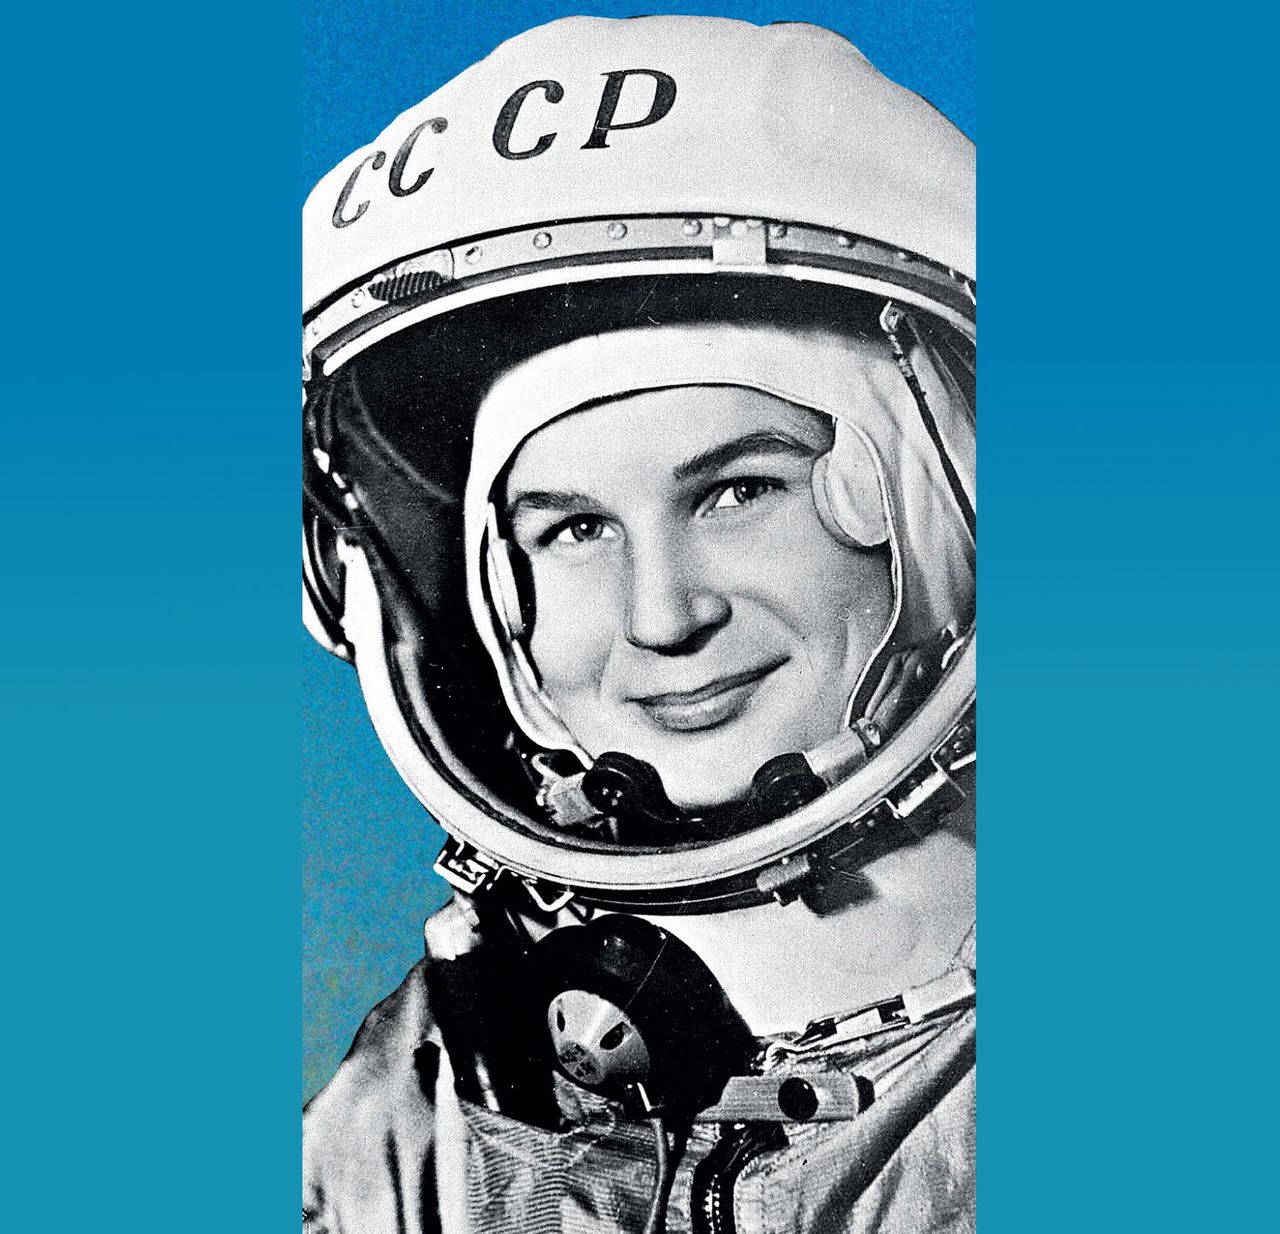 (Nie)sławny lot pierwszej kosmonautki Walentiny Tierieszkowej